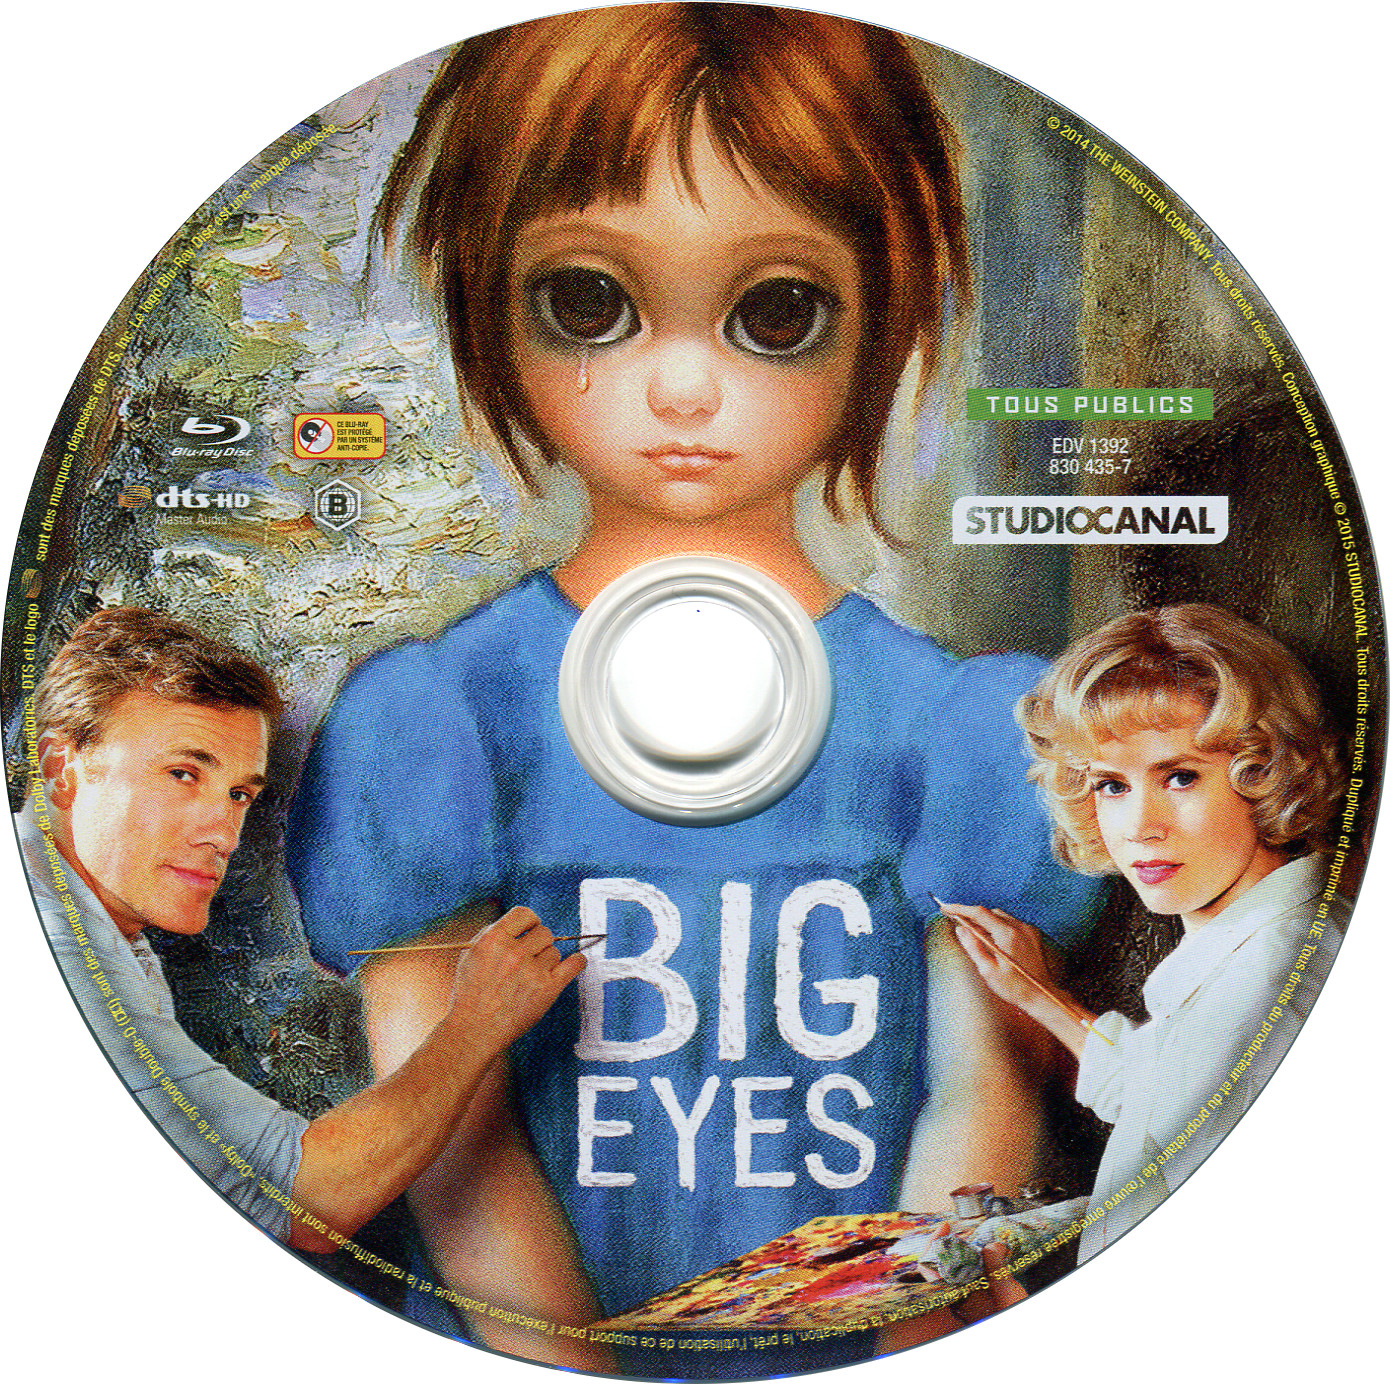 Big Eyes (BLU-RAY)